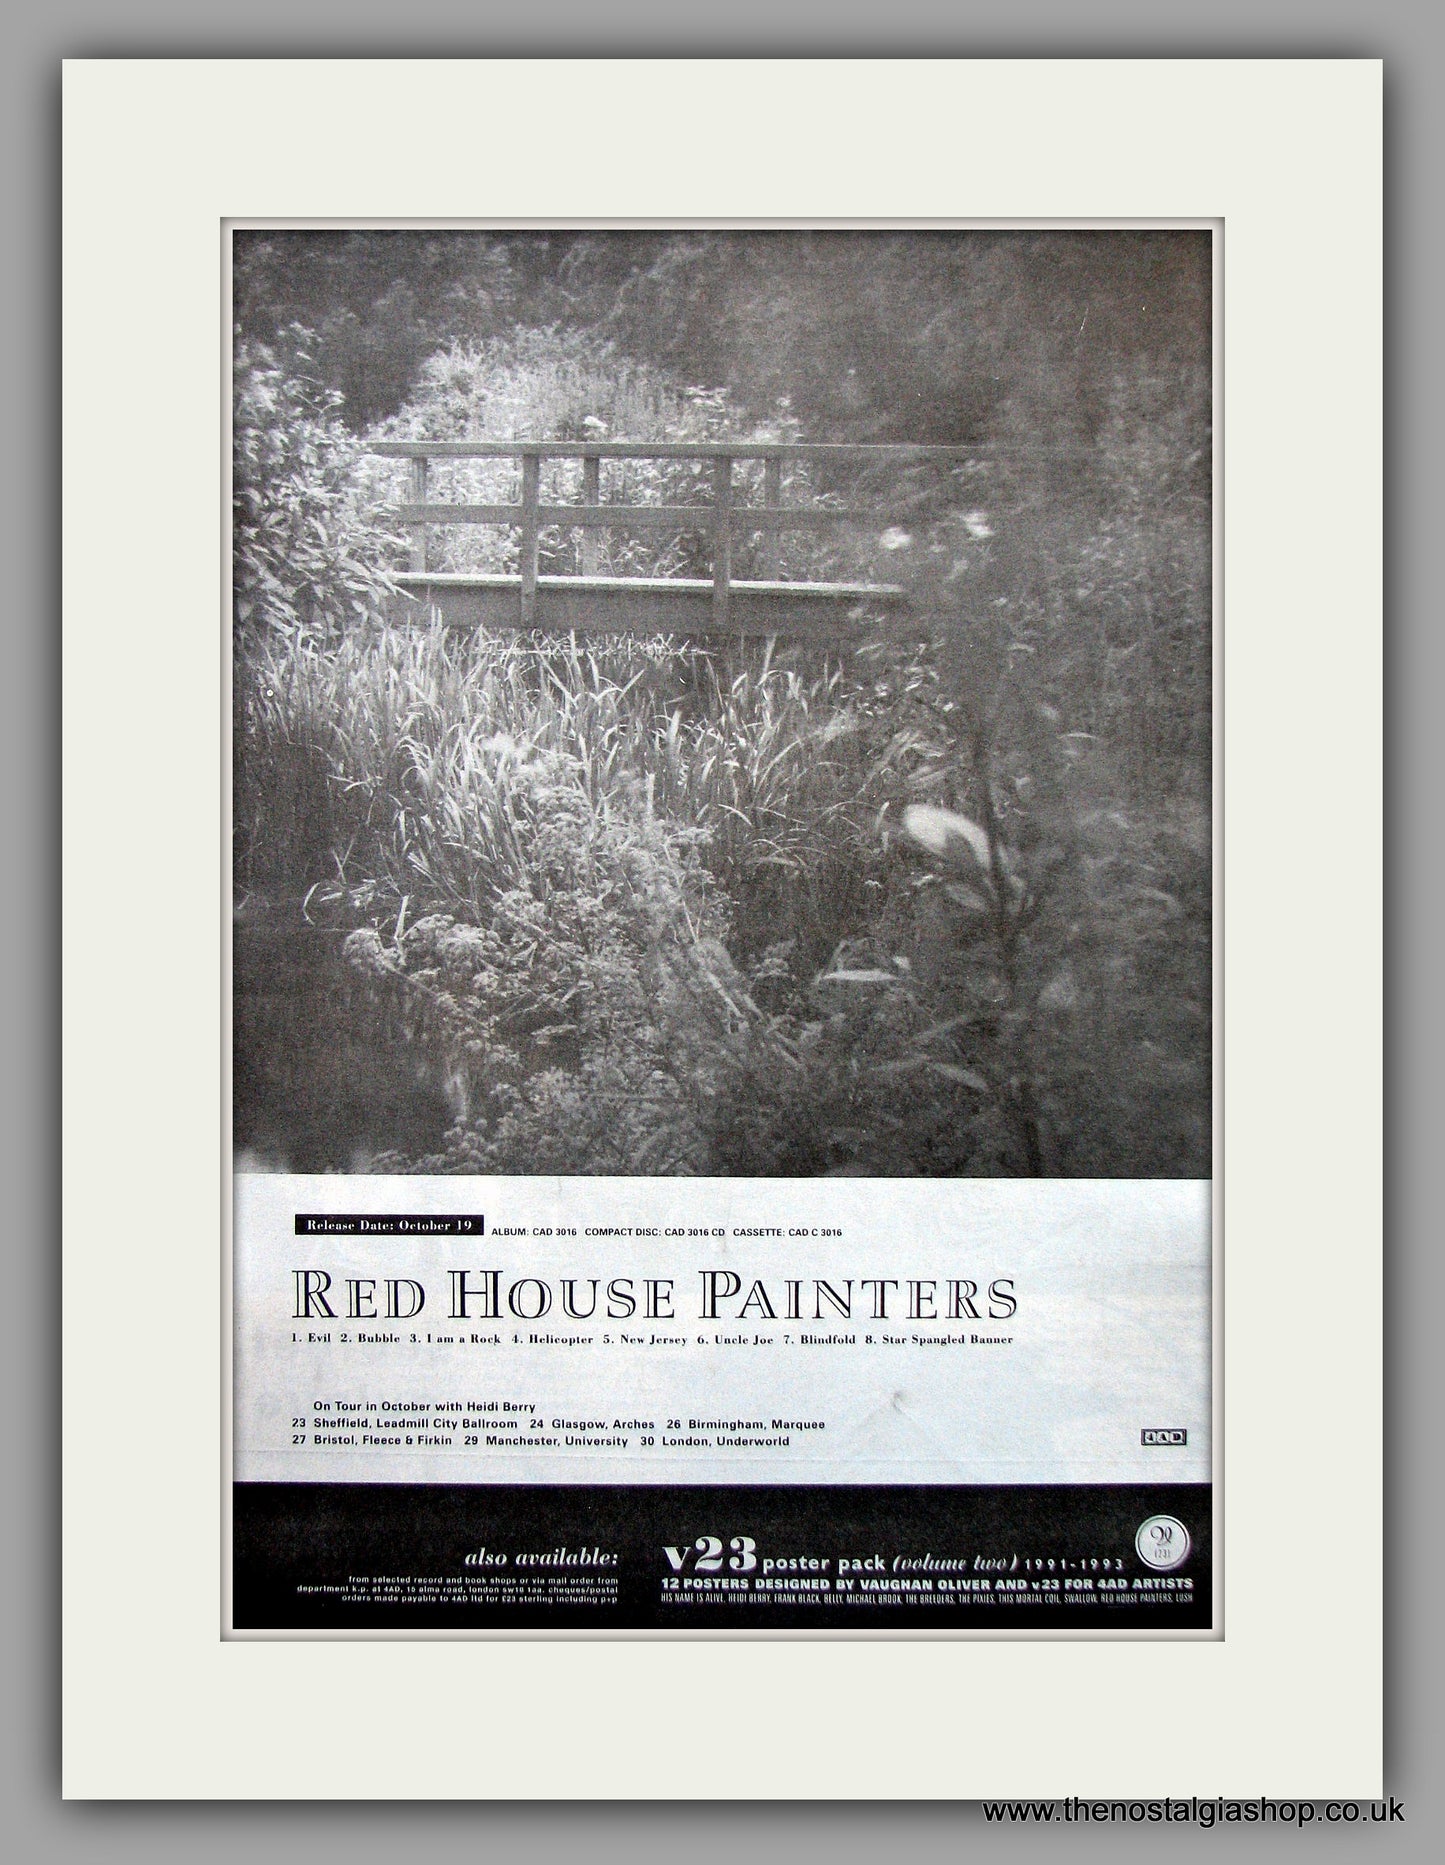 Red House Painters - Tour Details. Original Vintage Advert 1993 (ref AD10995)